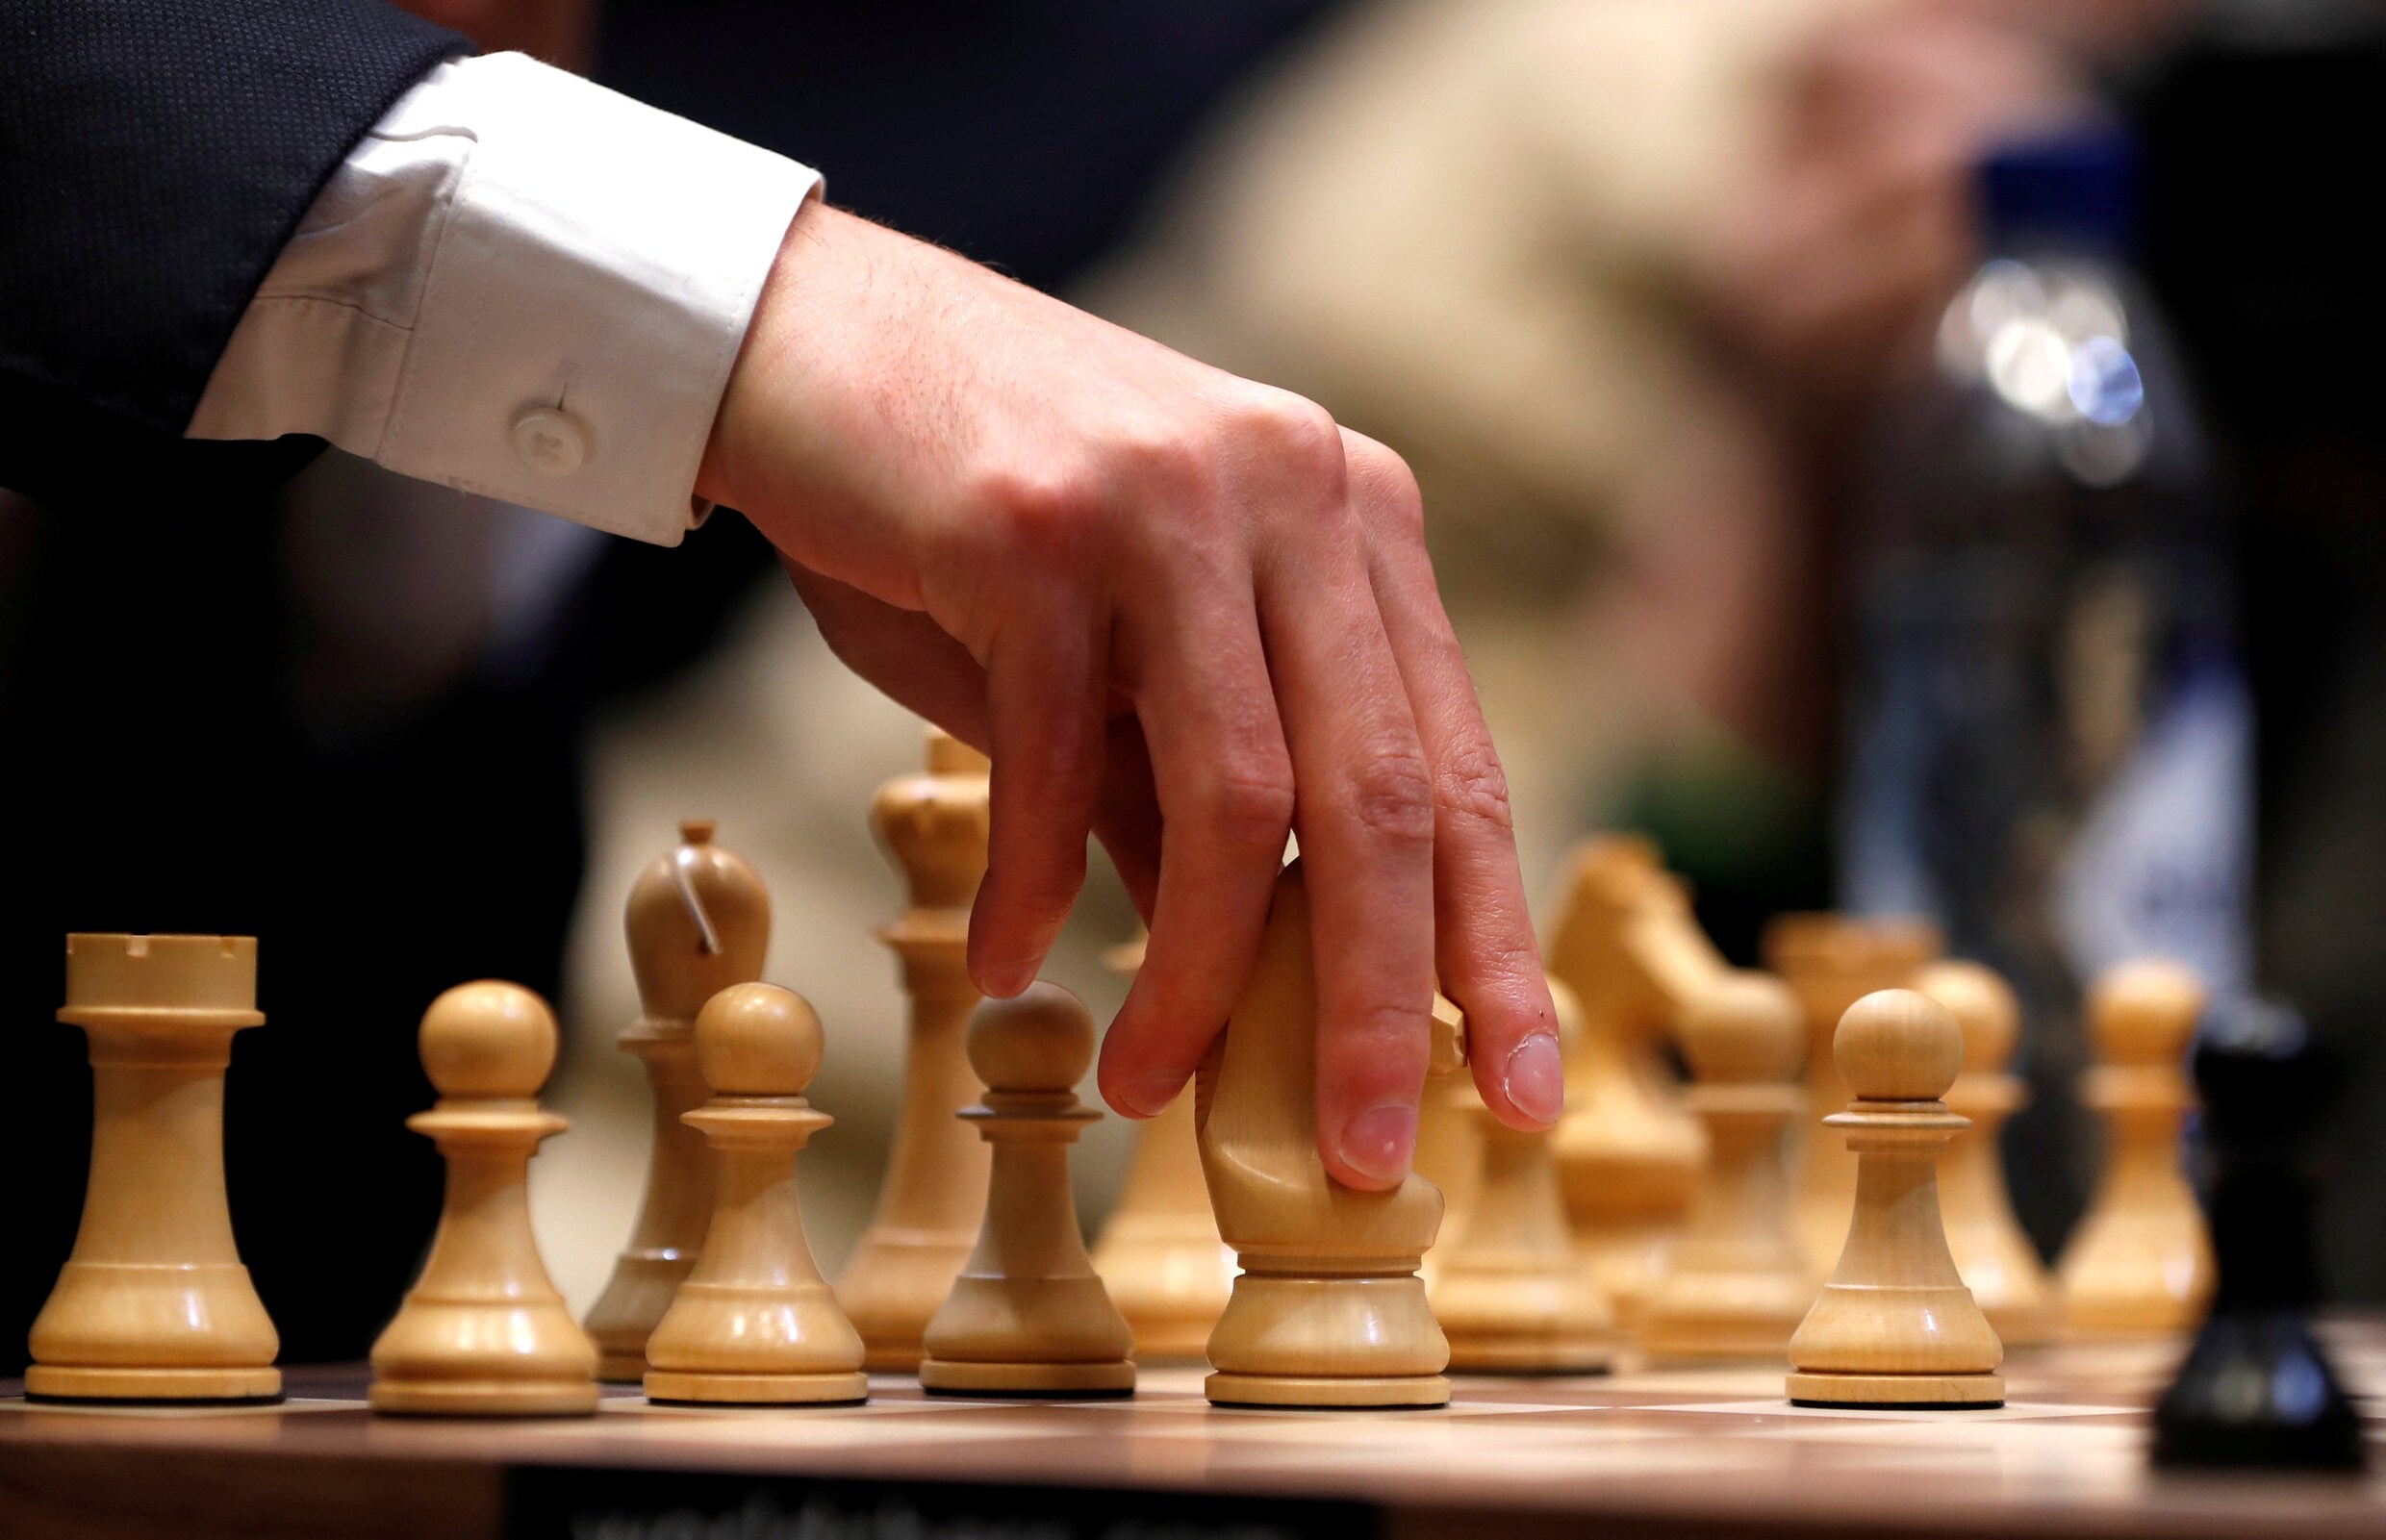 St. Louis is door het indrukwekkende programma de schaakhoofdstad van de wereld